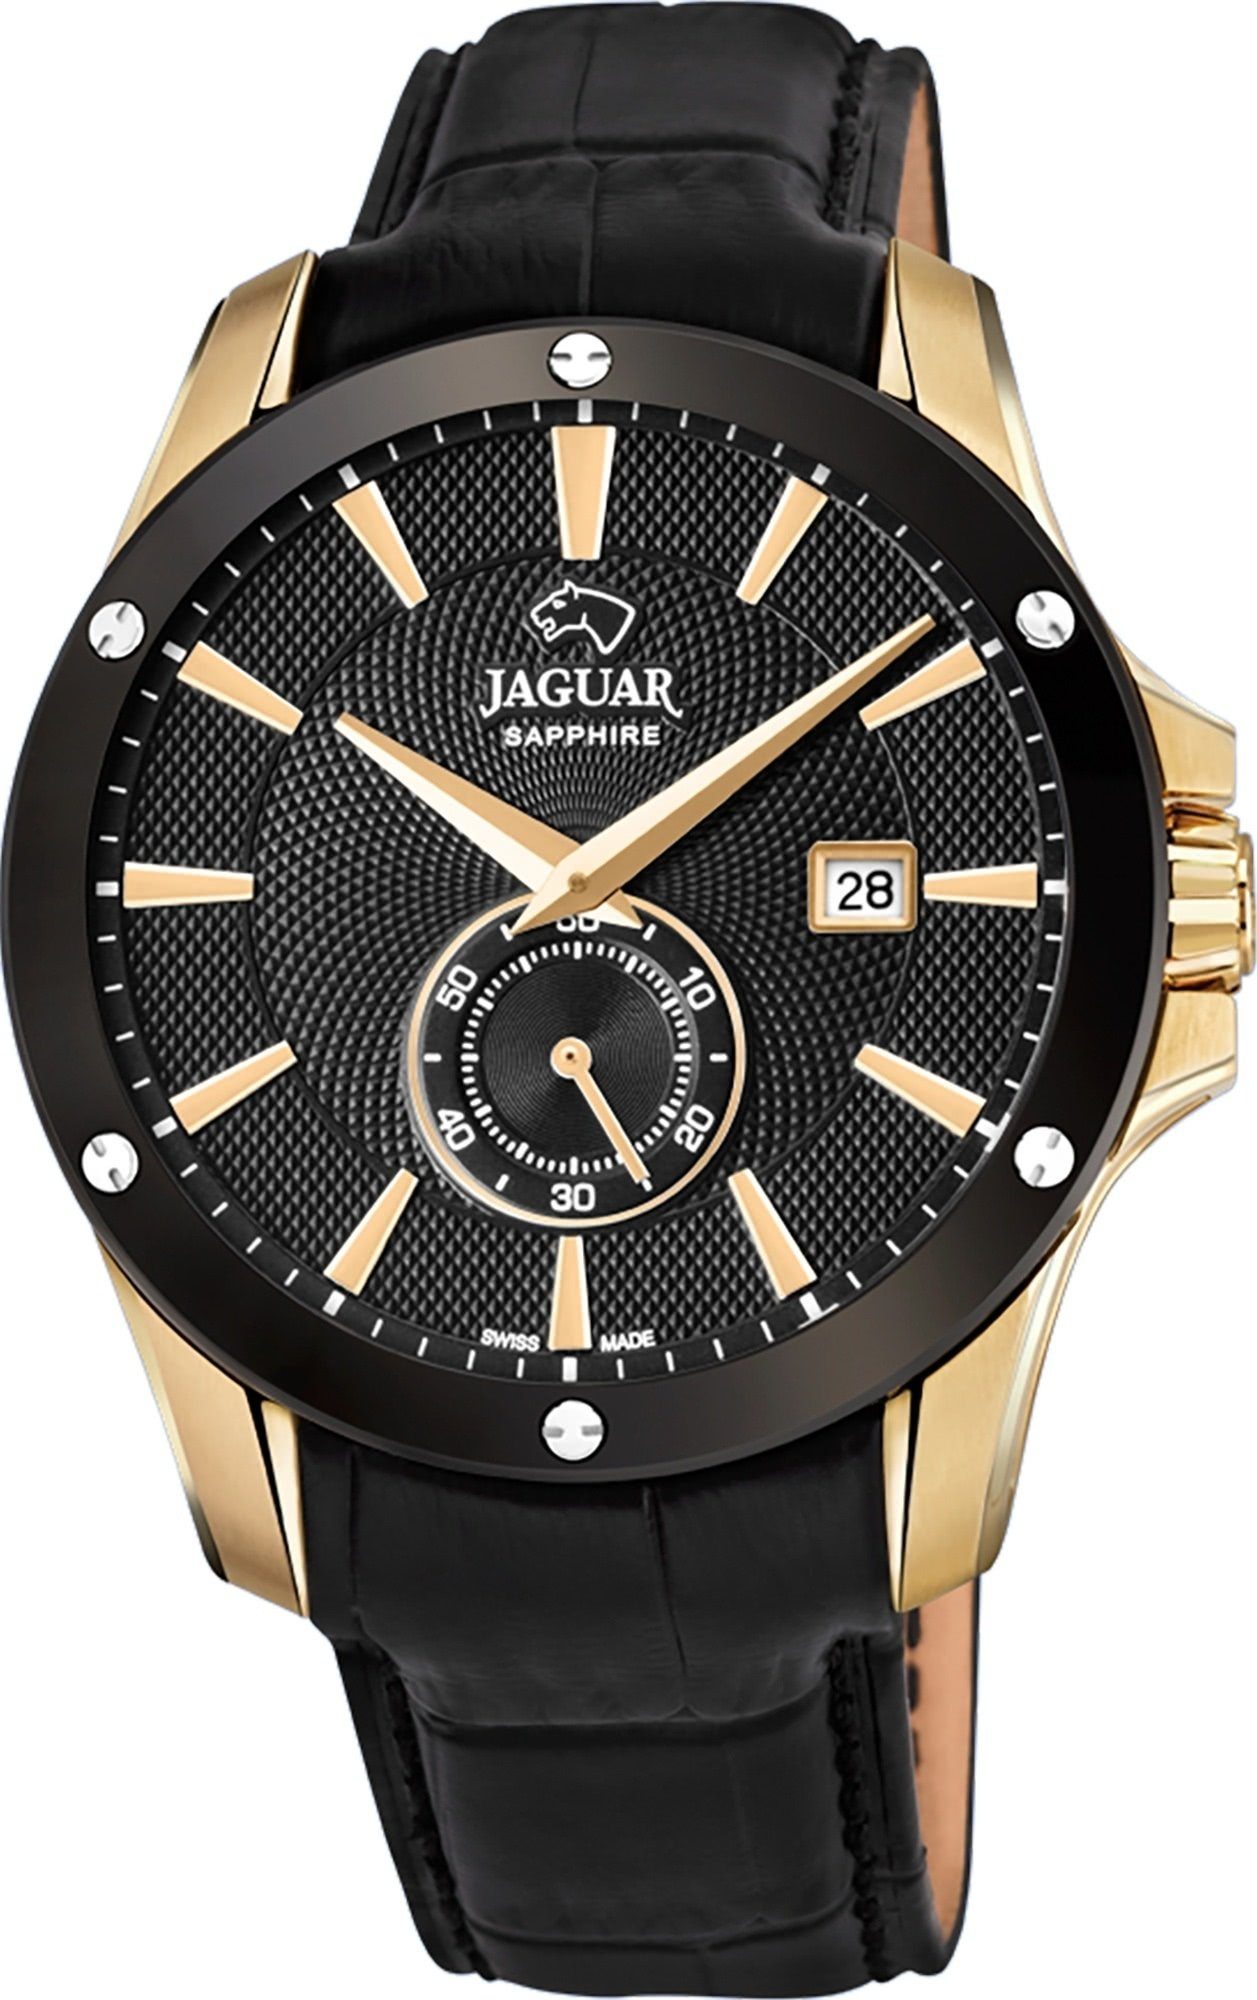 Jaguar Schweizer Uhr Acamar, J881/1 online kaufen | OTTO